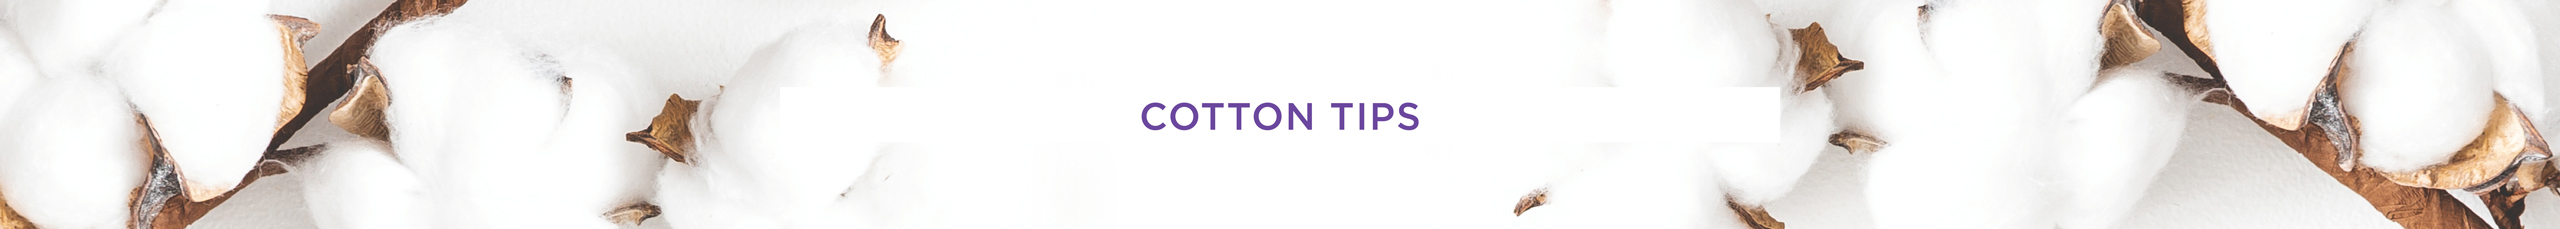 Swisspers Cotton Tips